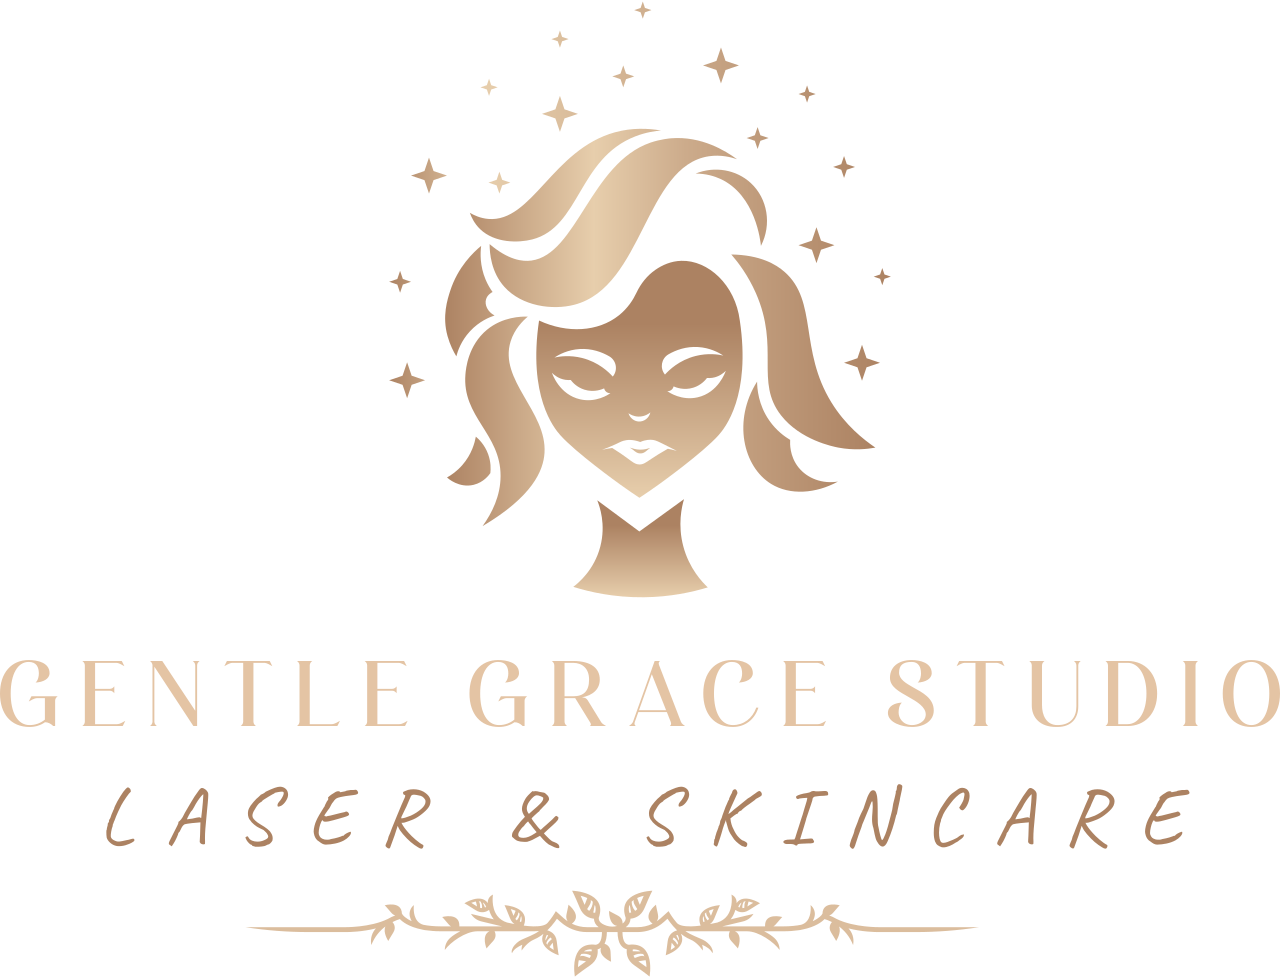 Gentle Grace Studio's logo